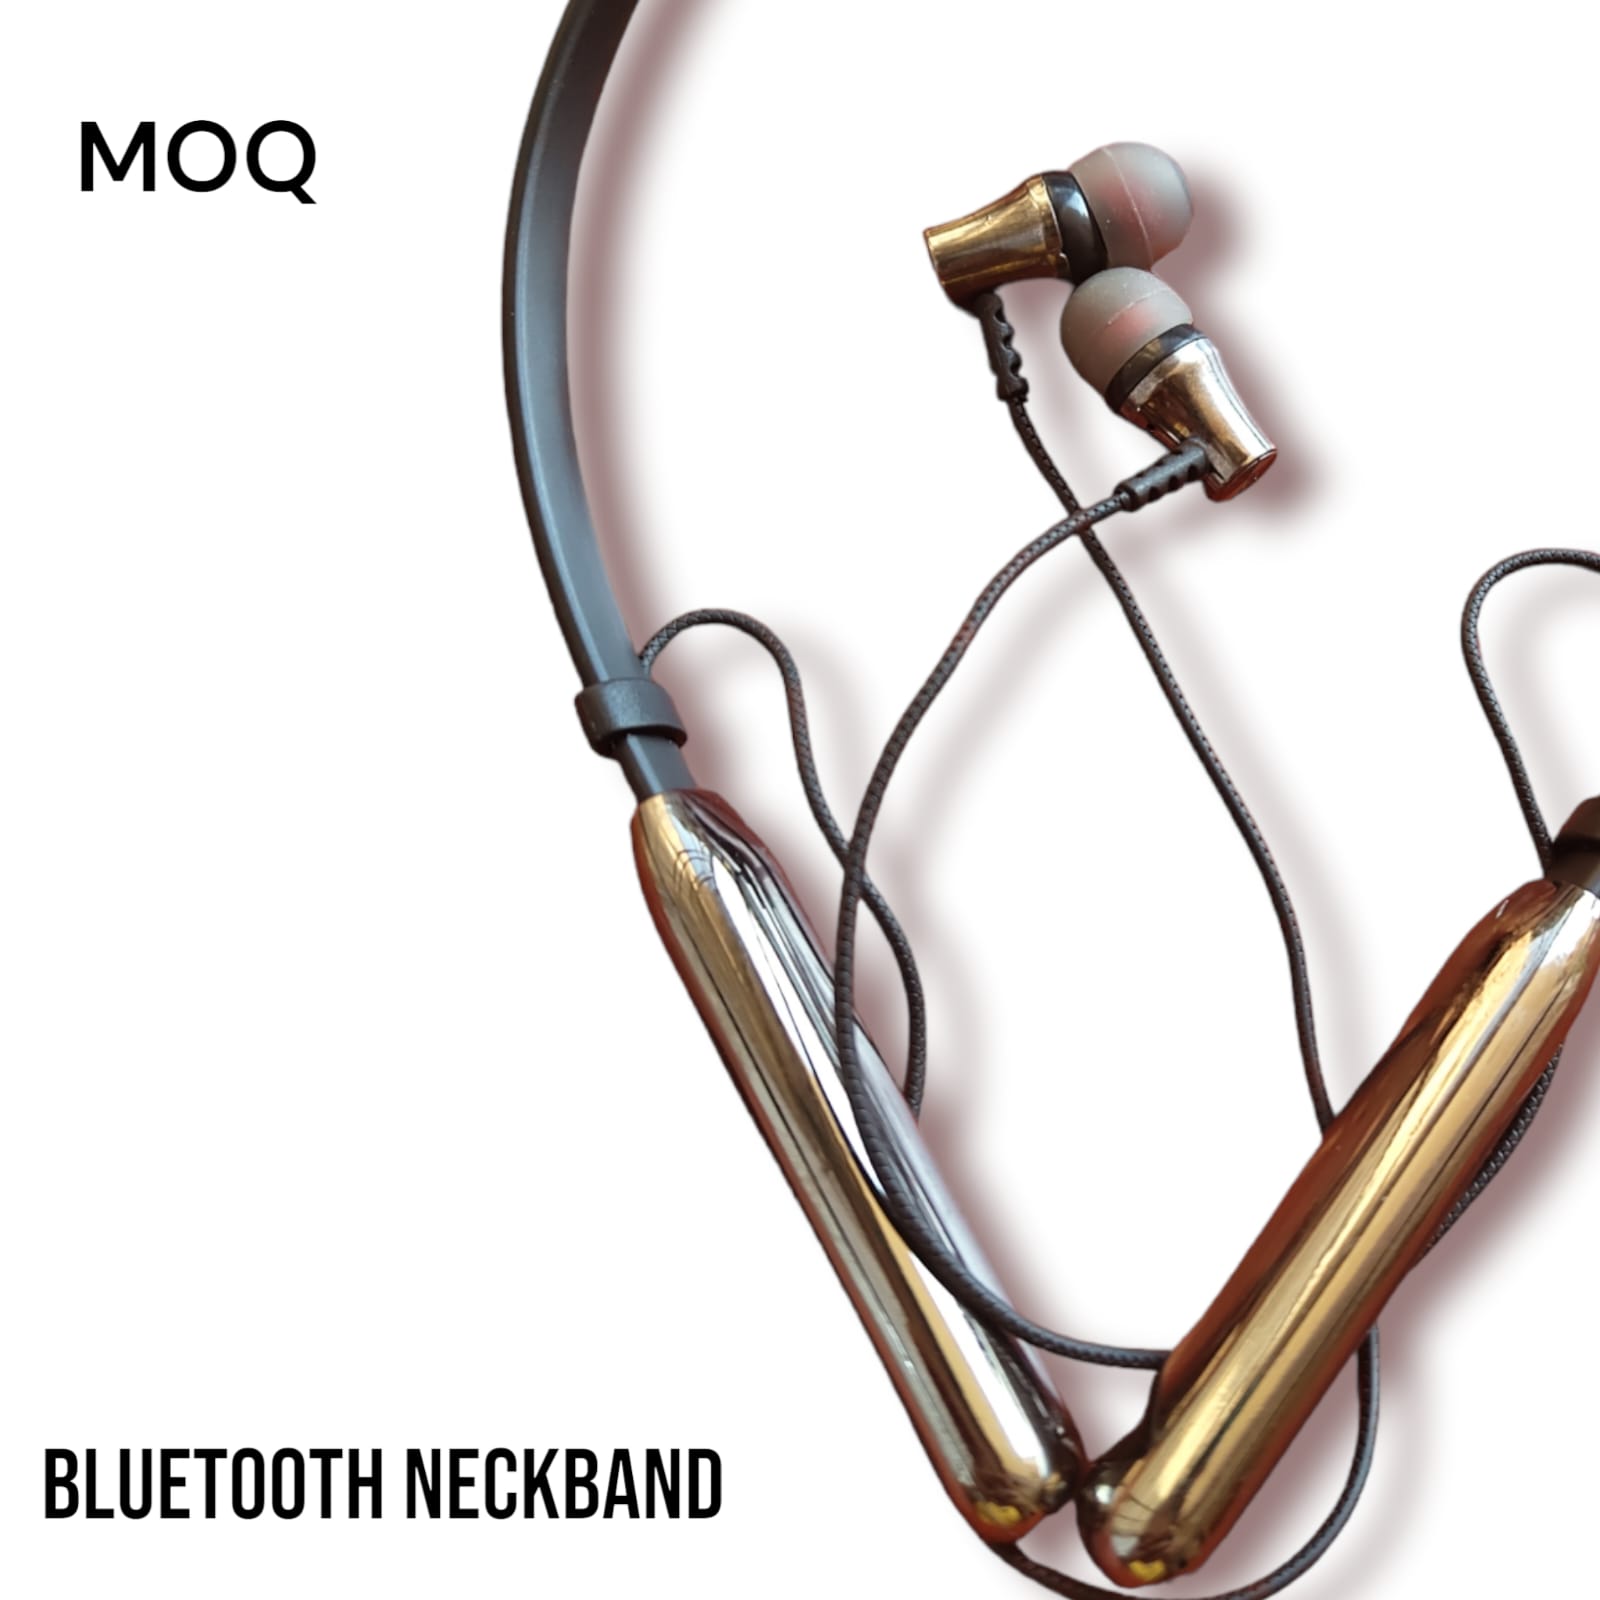 MOQ BASS WAVE BLUETOOTH NECKBAND EARPHONE 